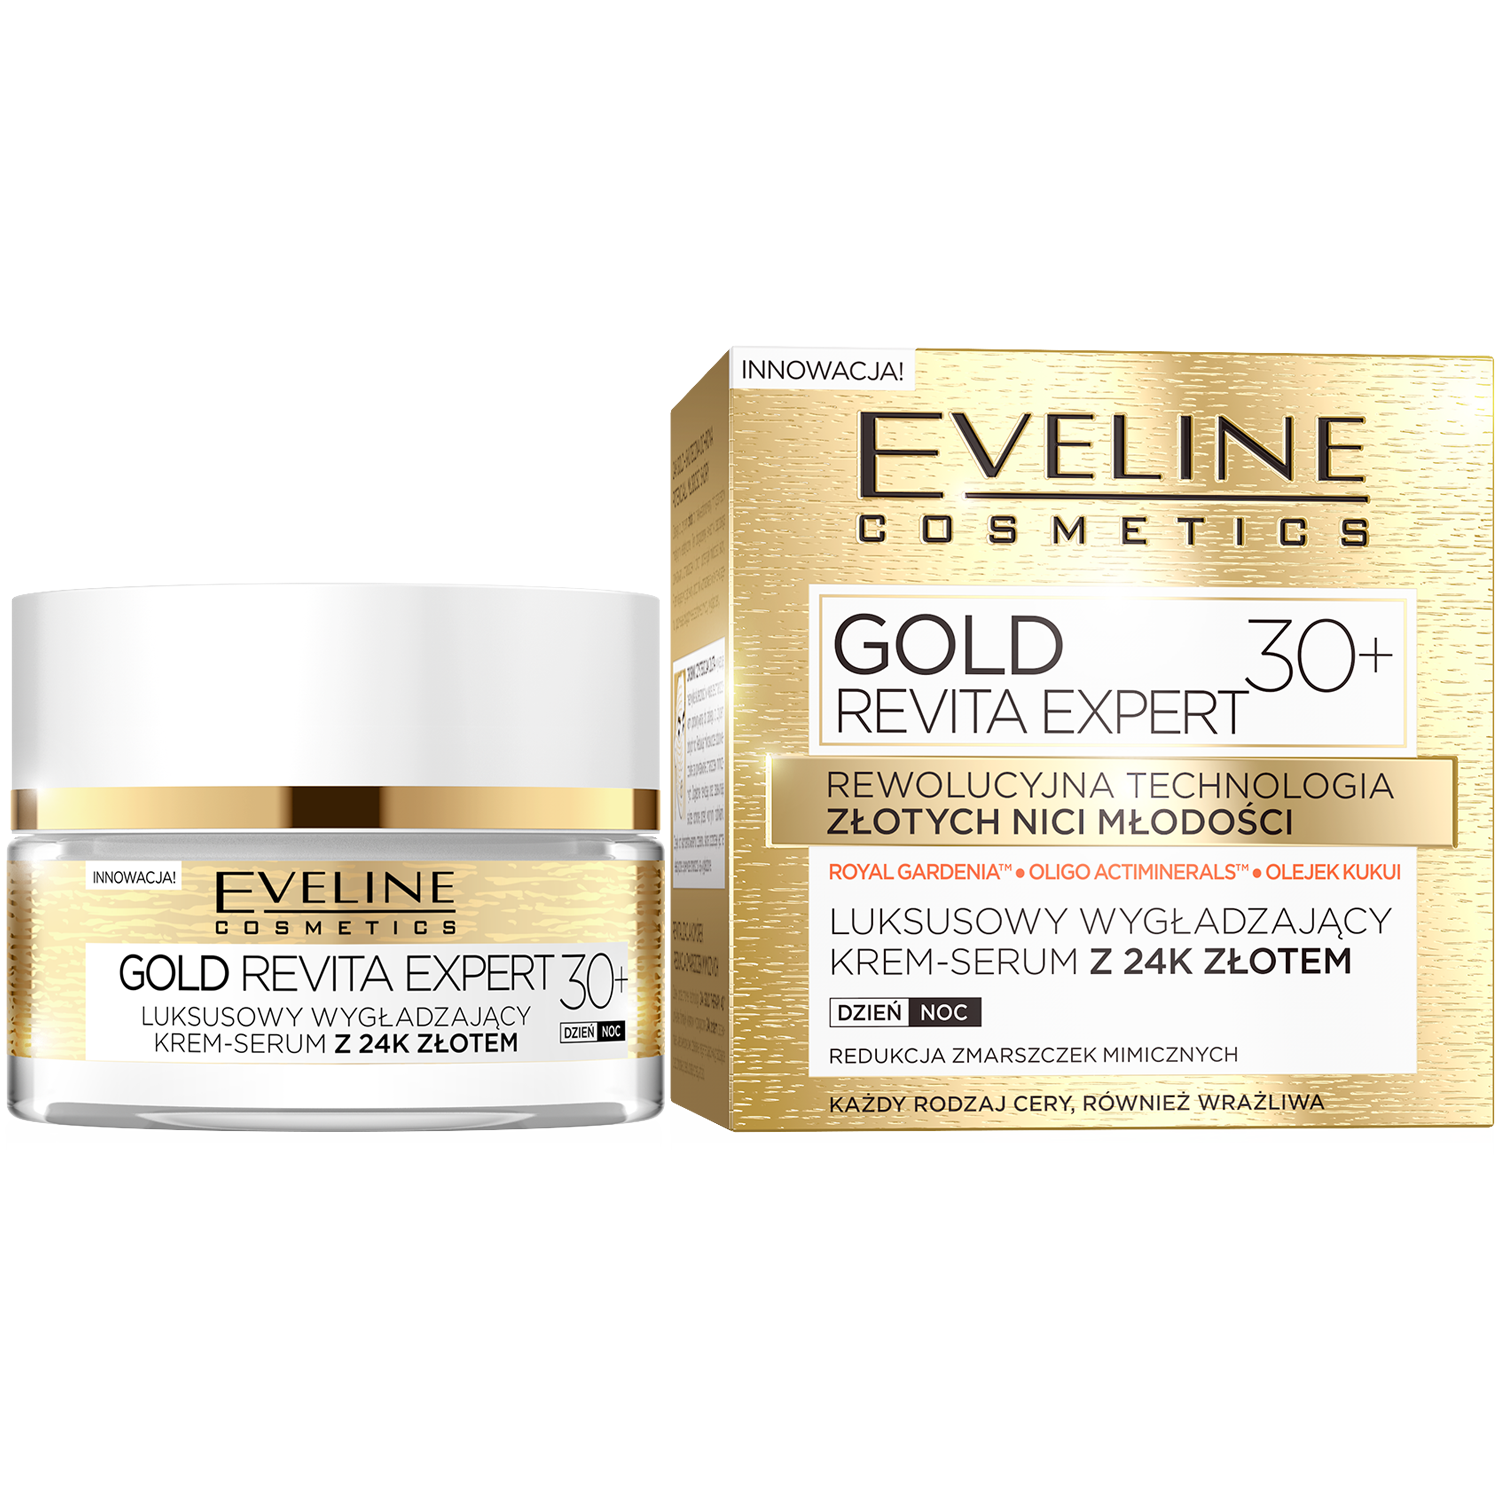 Gold lift. Eveline Gold Lift Expert эксклюзивный мультипитательный крем-сыворотка. Eveline Gold Lift Expert 70+. Eveline косметика Gold Lift Expert. Eveline Gold Lift Expert 50+.